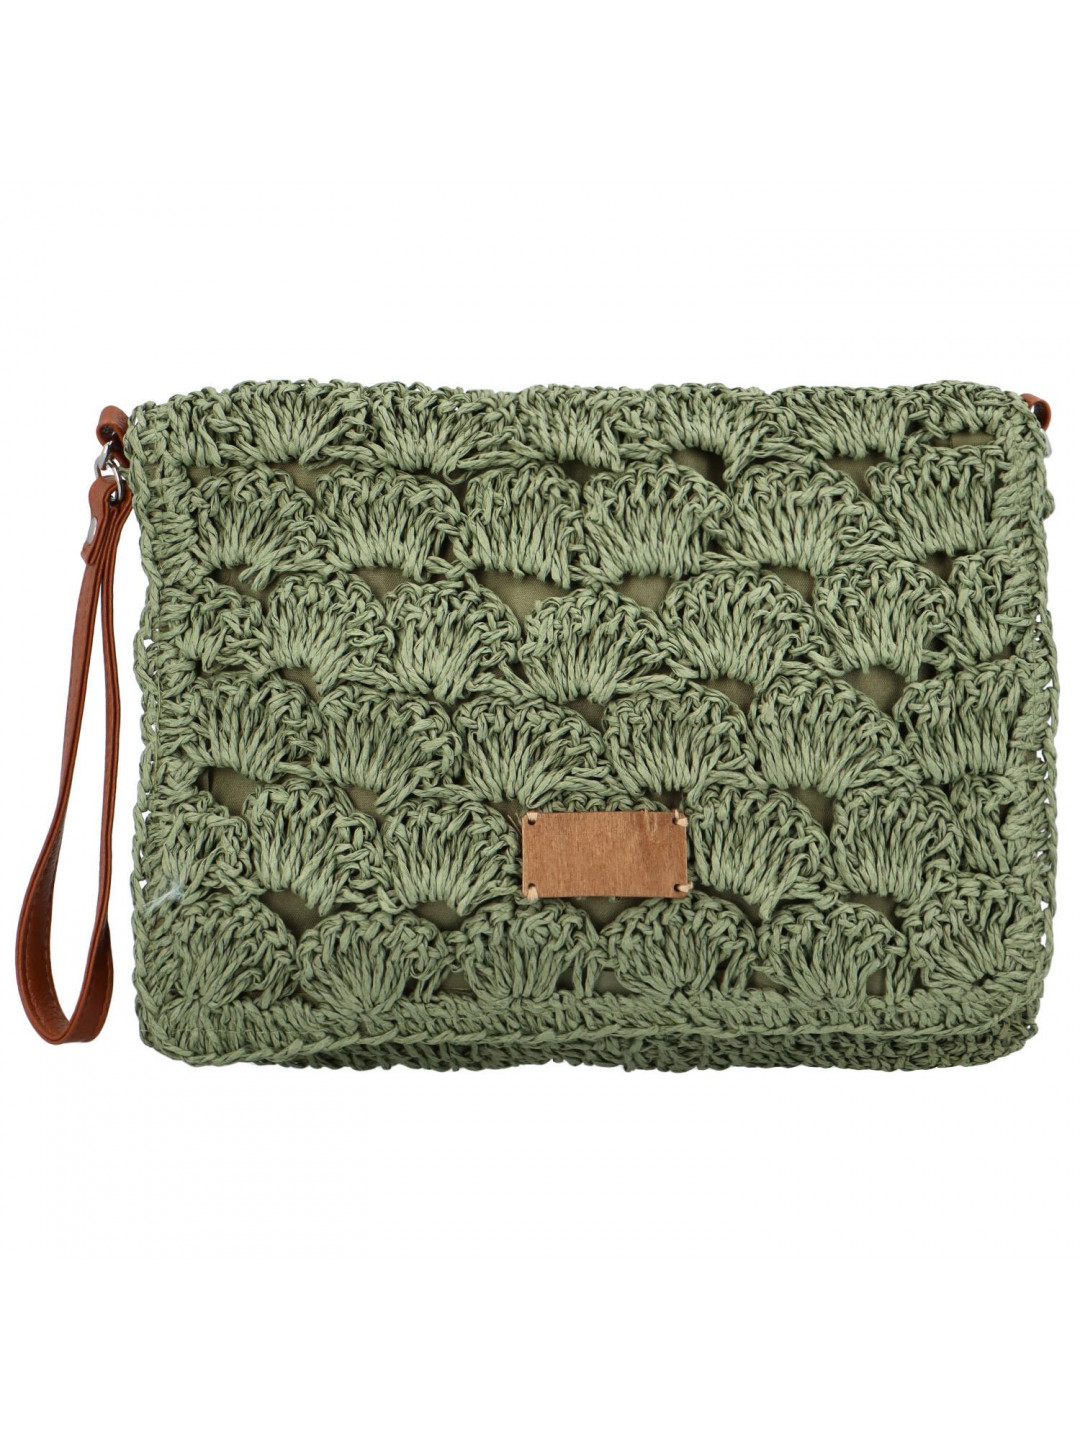 Měkká kabelka do ruky s pleteným vzorem Vivalo zelená